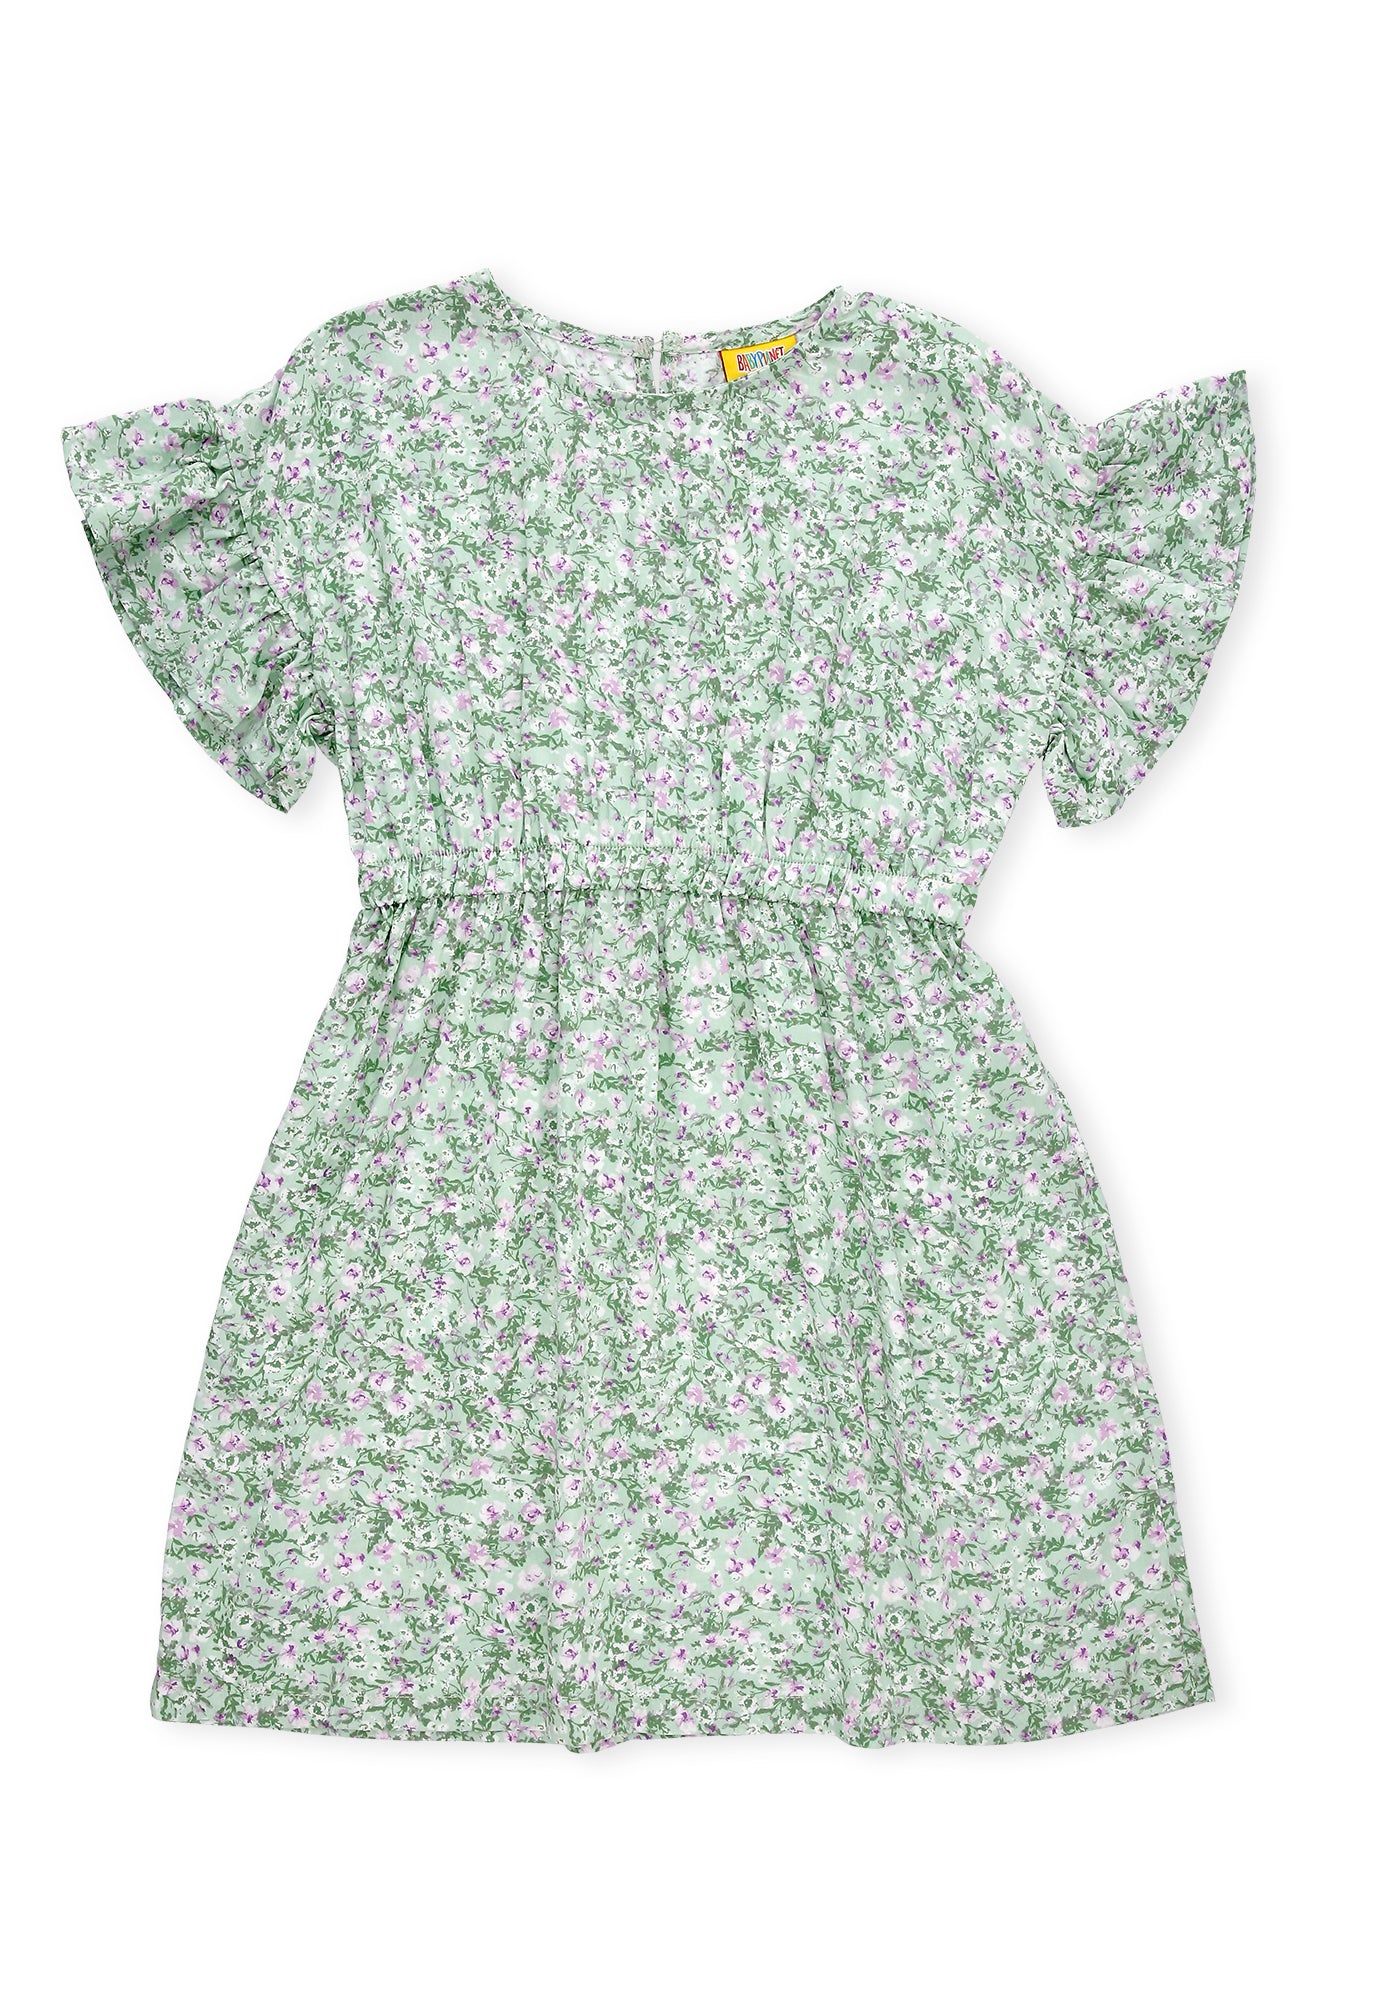 Vestido verde claro sublimado, manga corta con bolero y abertura en espalda para bebé niña